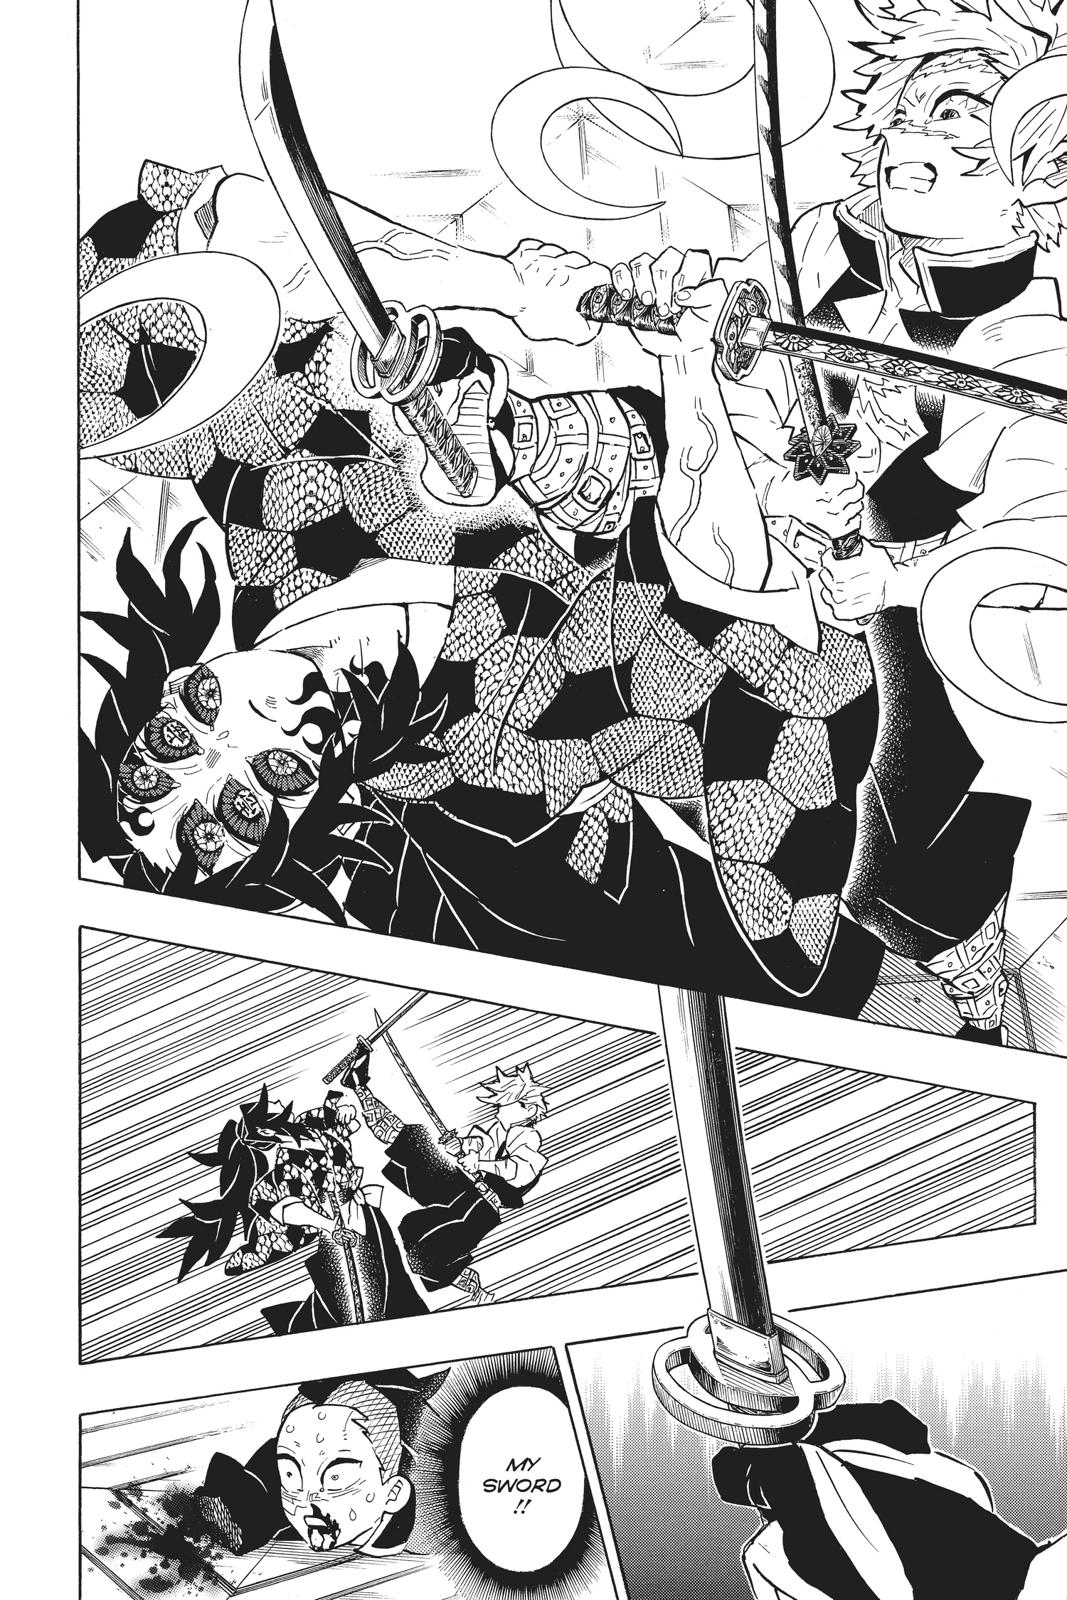 Demon Slayer Manga Manga Chapter - 167 - image 10